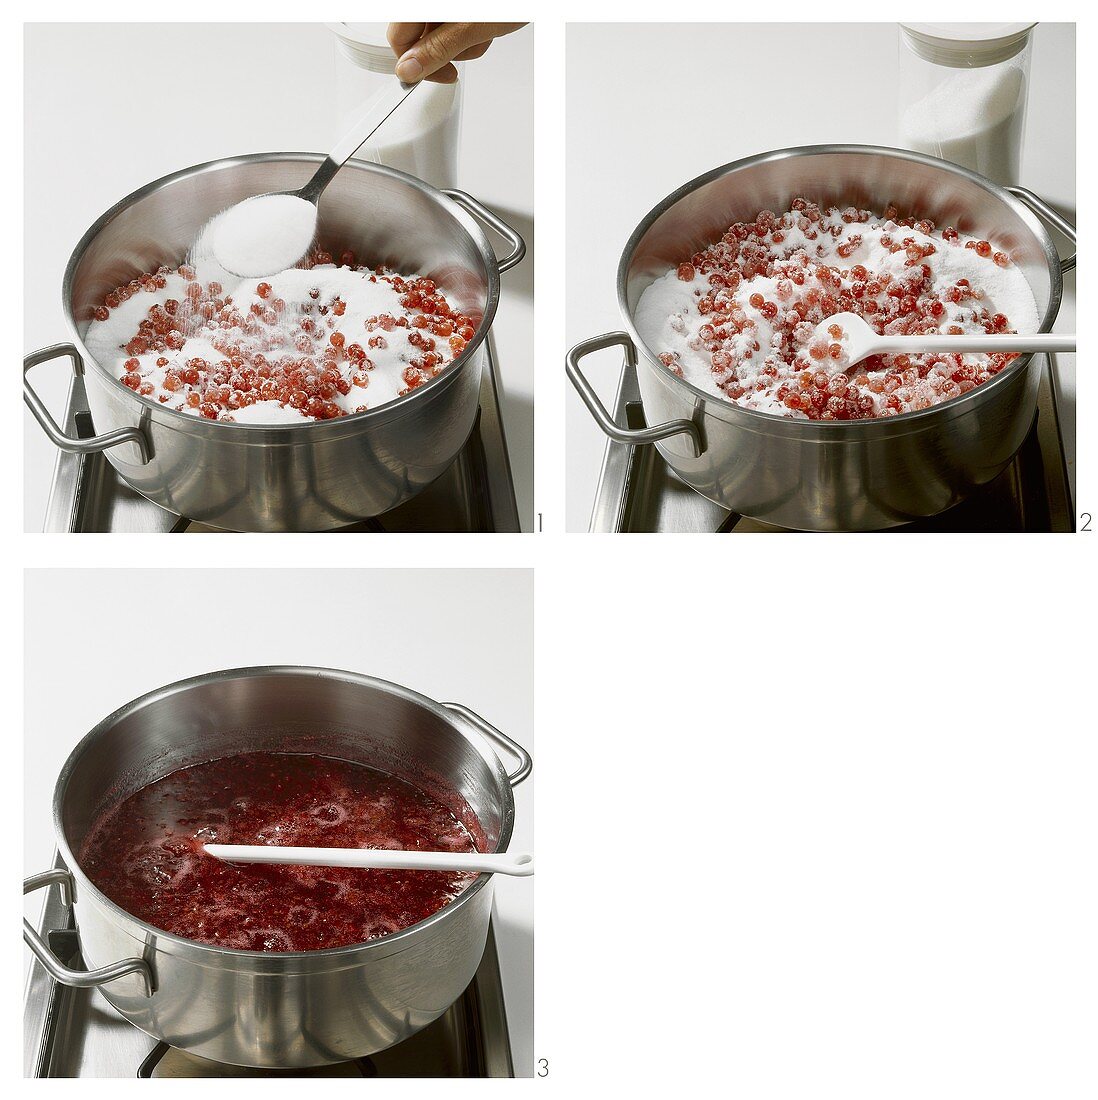 Making redcurrant jam